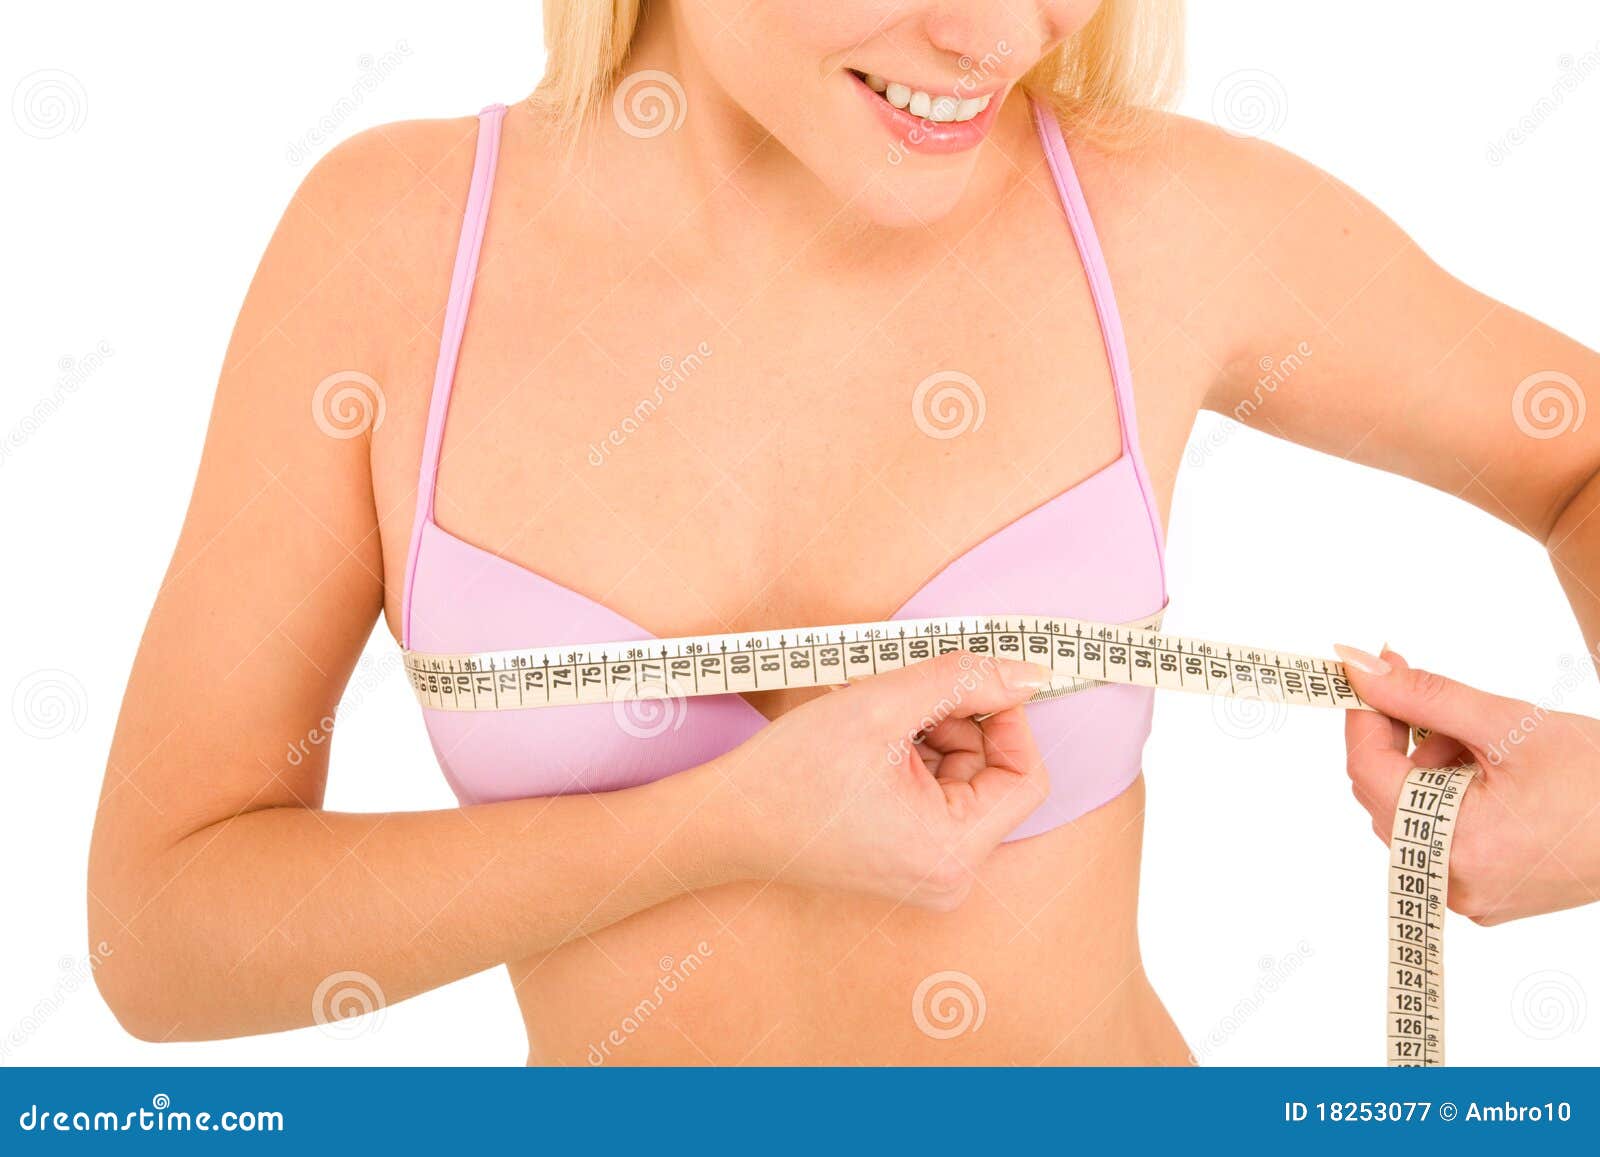 Микро груди. Грудь. Измерить грудь у женщин. Измерение груди у девочек. Окр груди.